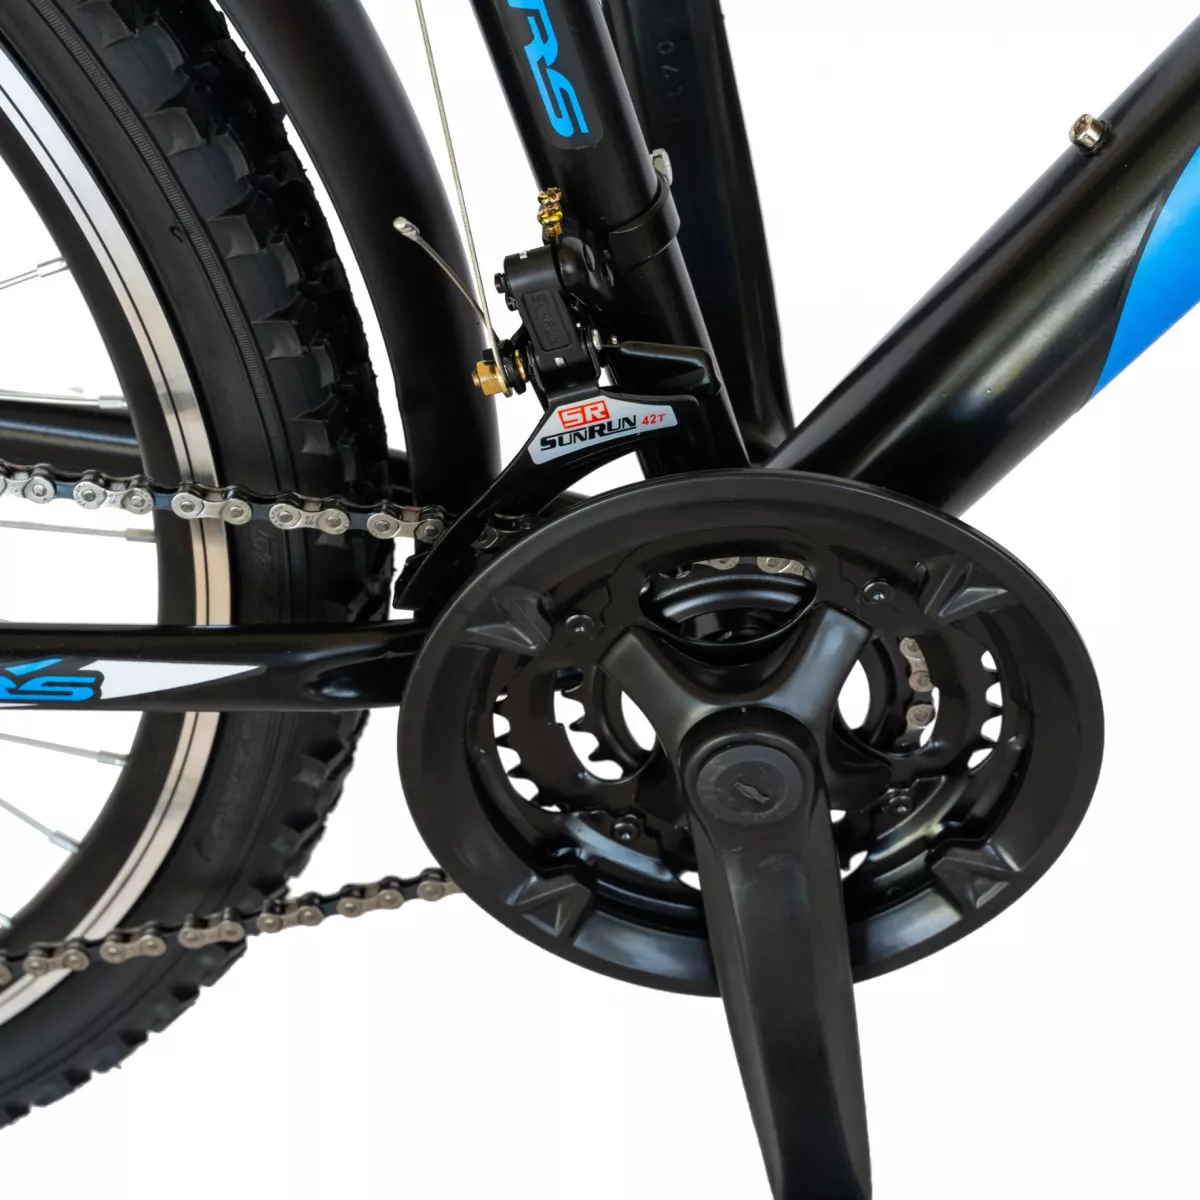 Bicicleta CITY Velors V2633B, roata 26 inch, echipare Shimano, 18 viteze, culoare negru/albastru